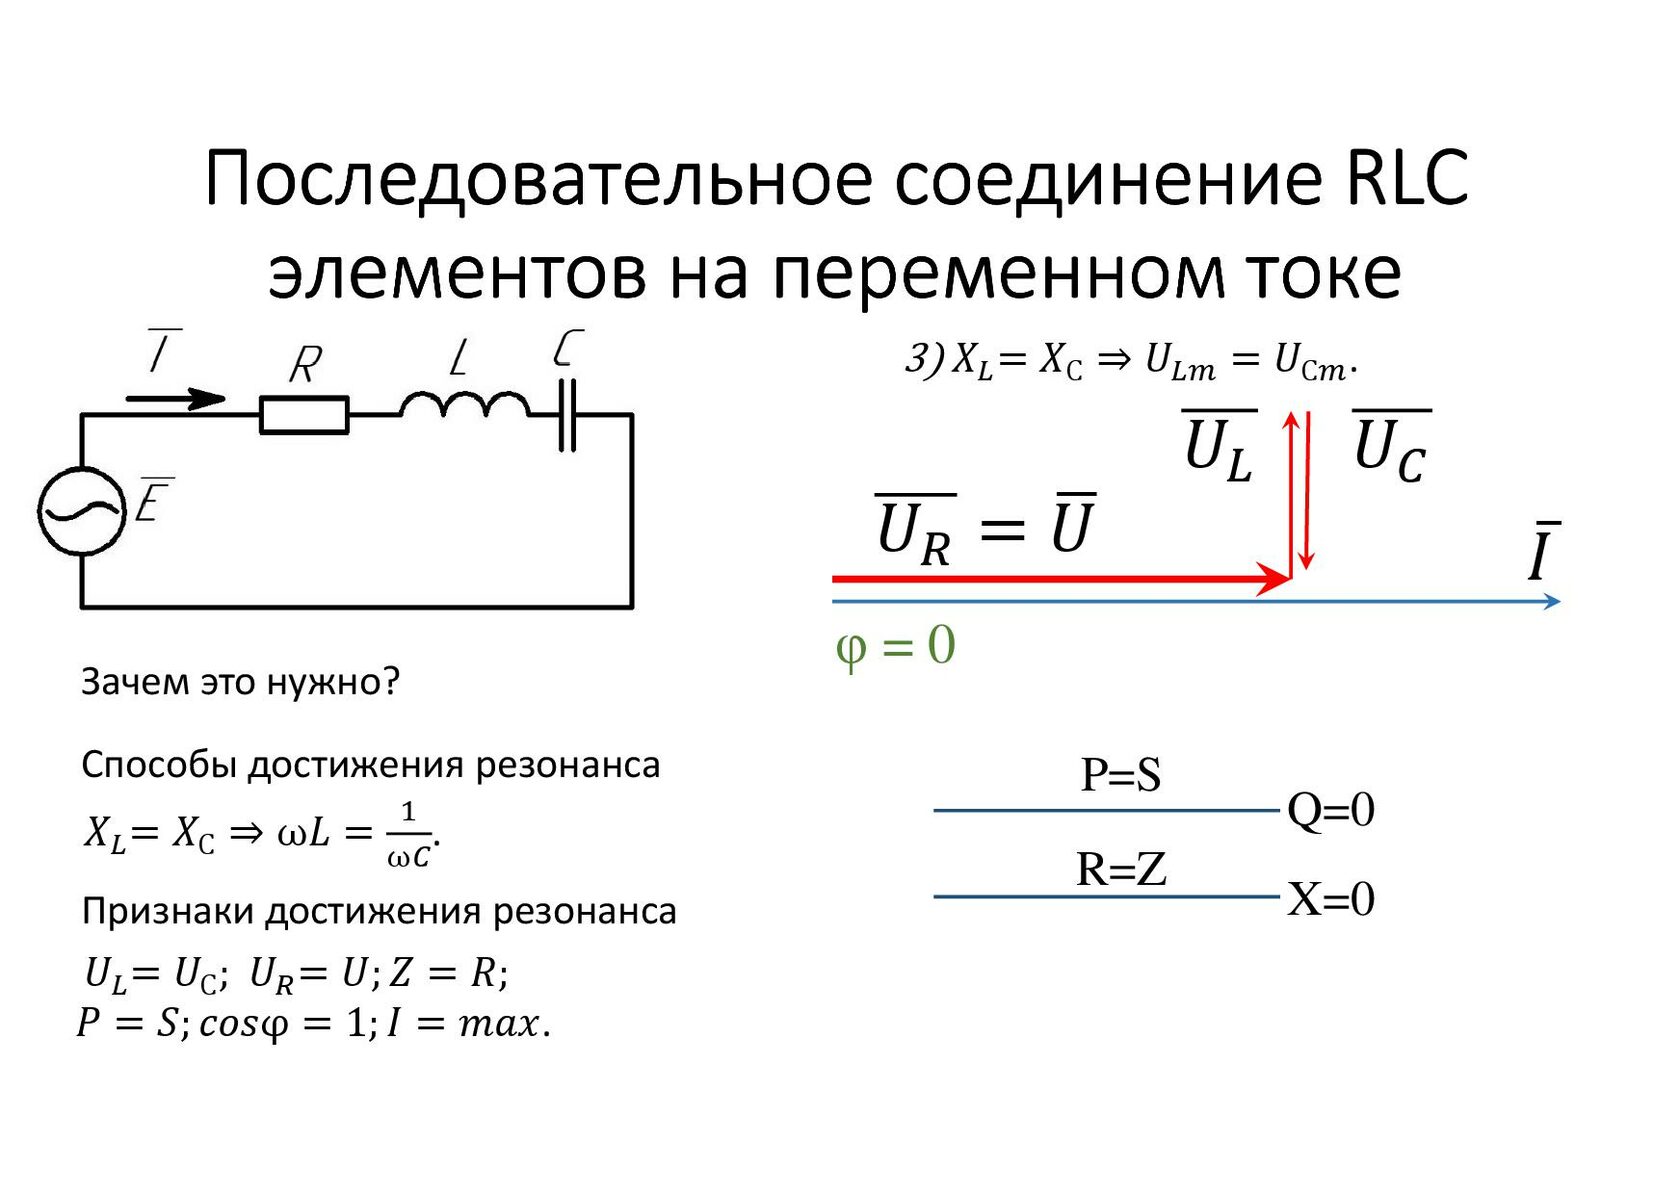 В цепь последовательно включены катушка индуктивностью. RLC цепи переменного тока. Электрические цепи с параллельным соединением RLC. Последовательное подключение в переменном токе. Электрическая цепь с параллельным соединением RLC-элементов.